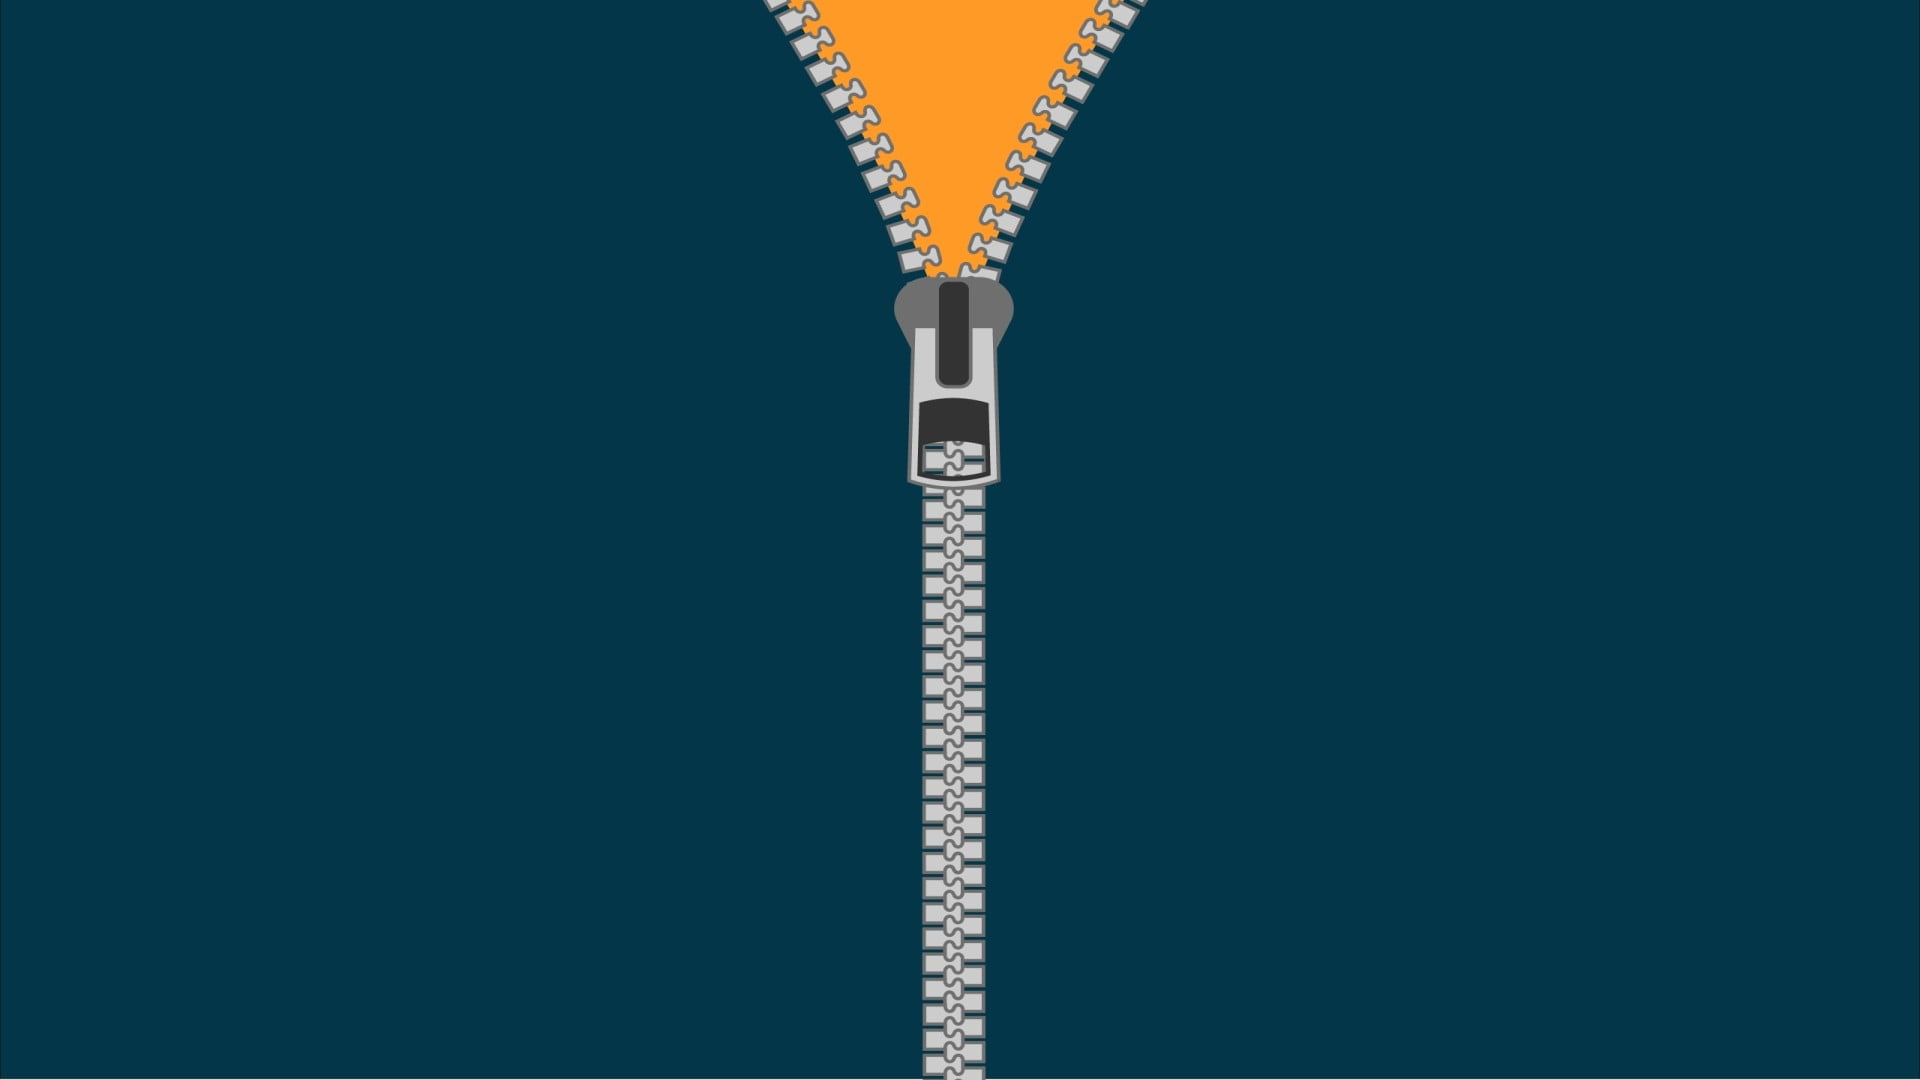 Zipper illustration, minimalism HD